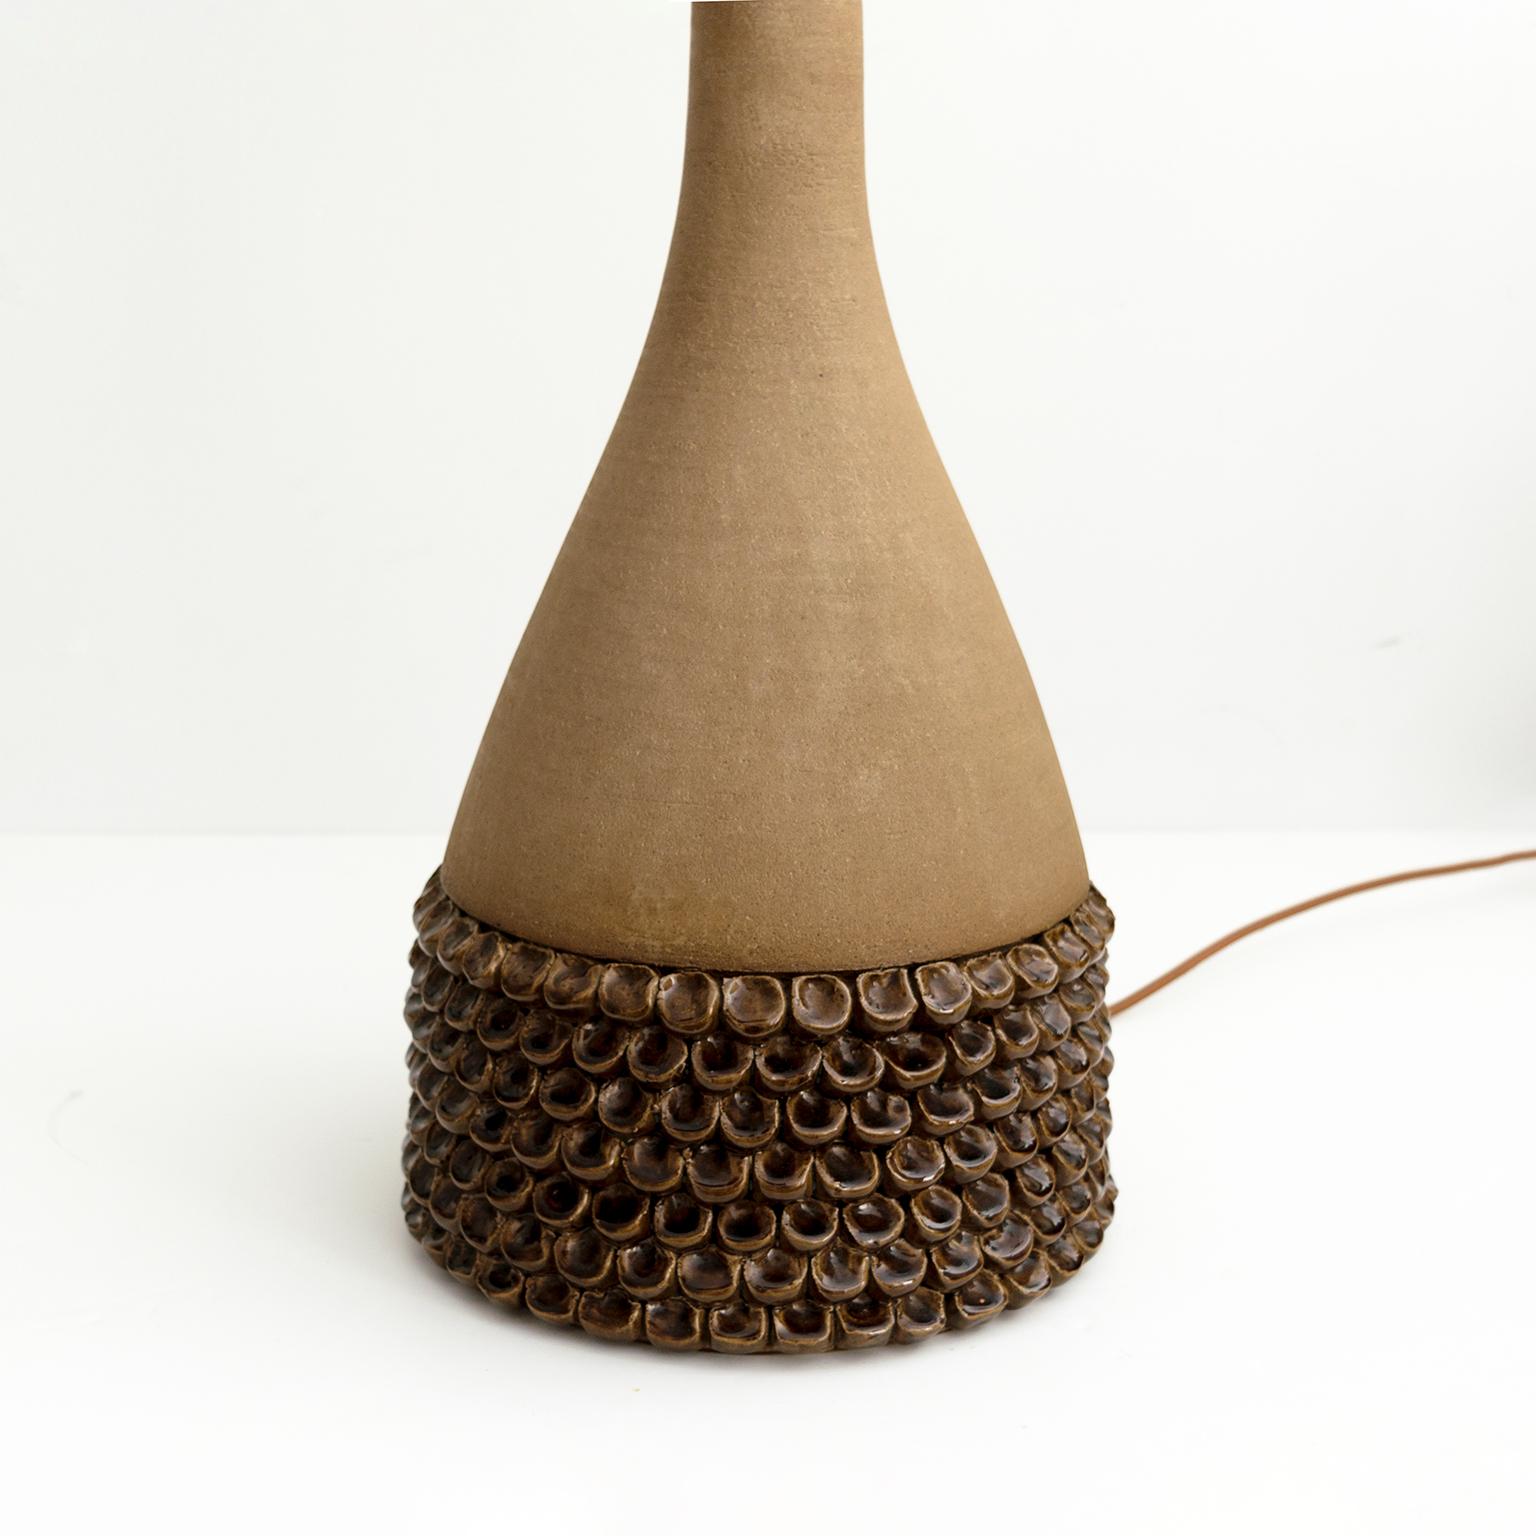 Großes Paar Keramiklampen von Aage Rasmus Selsbo, Studio Selsbo Keramik, Dänemark (Messing) im Angebot